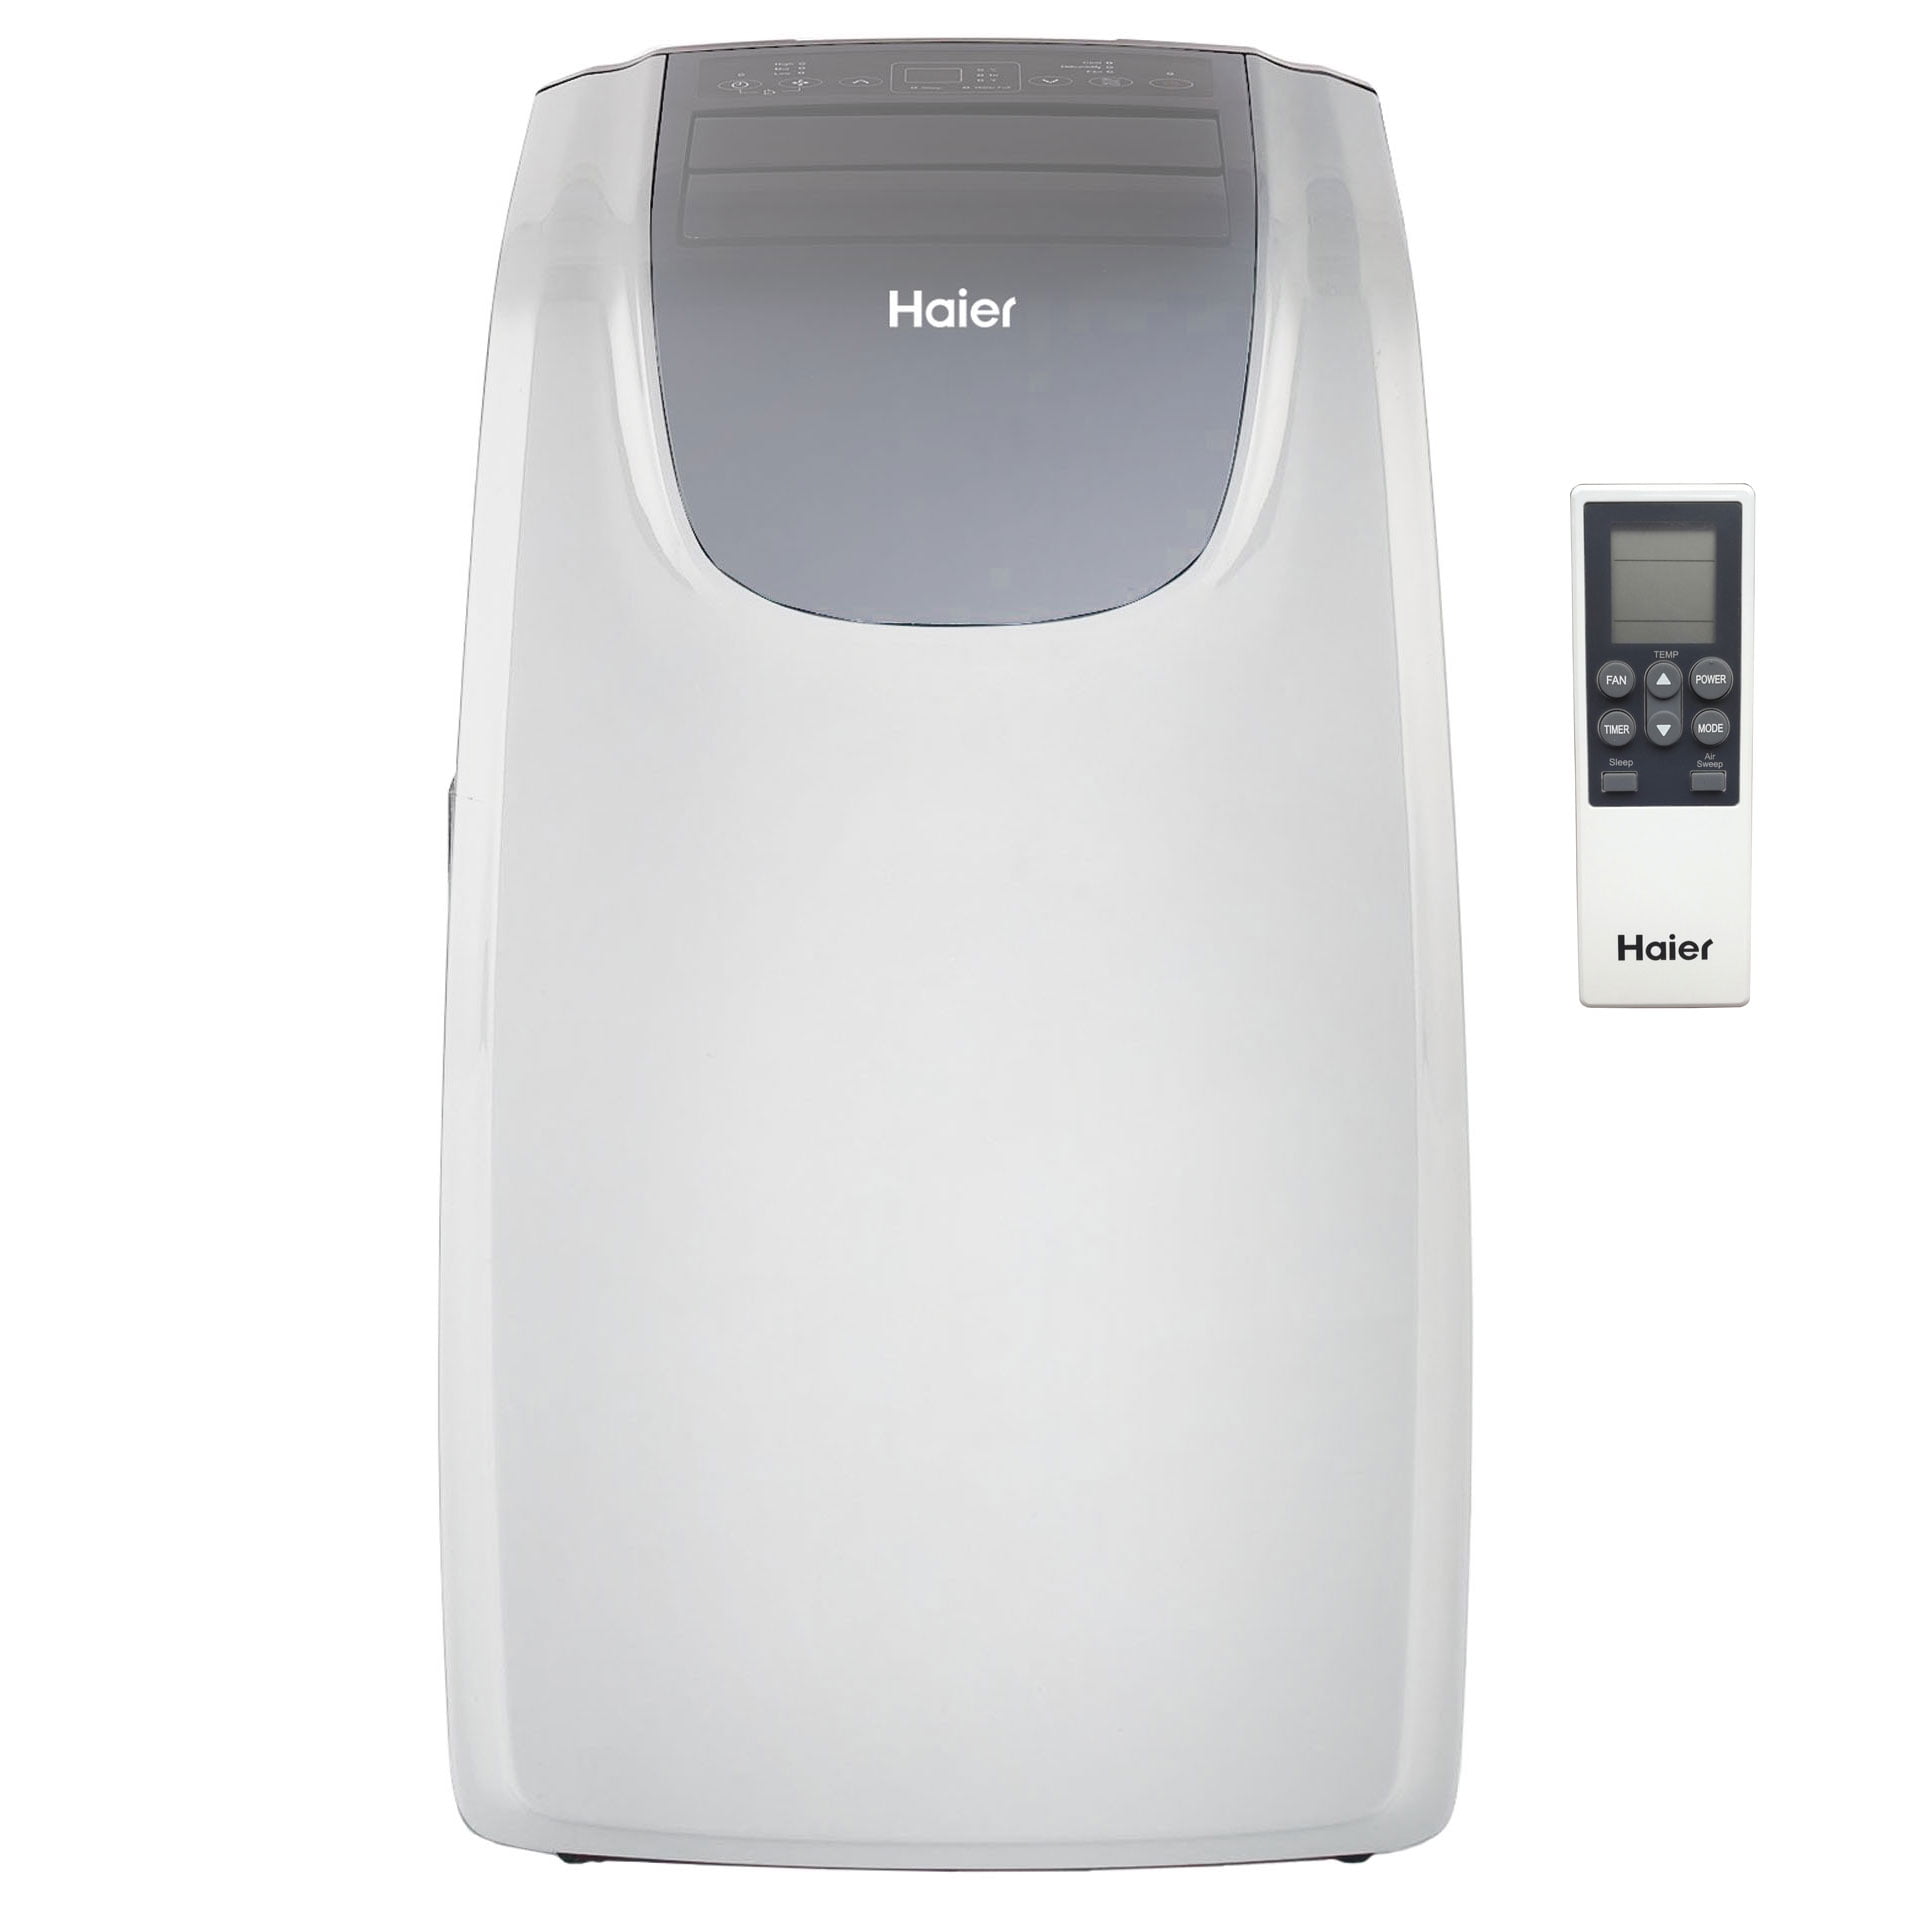 Haier QPCD10AXLW 450 Sq Ft Portable Air Conditioner Unit 